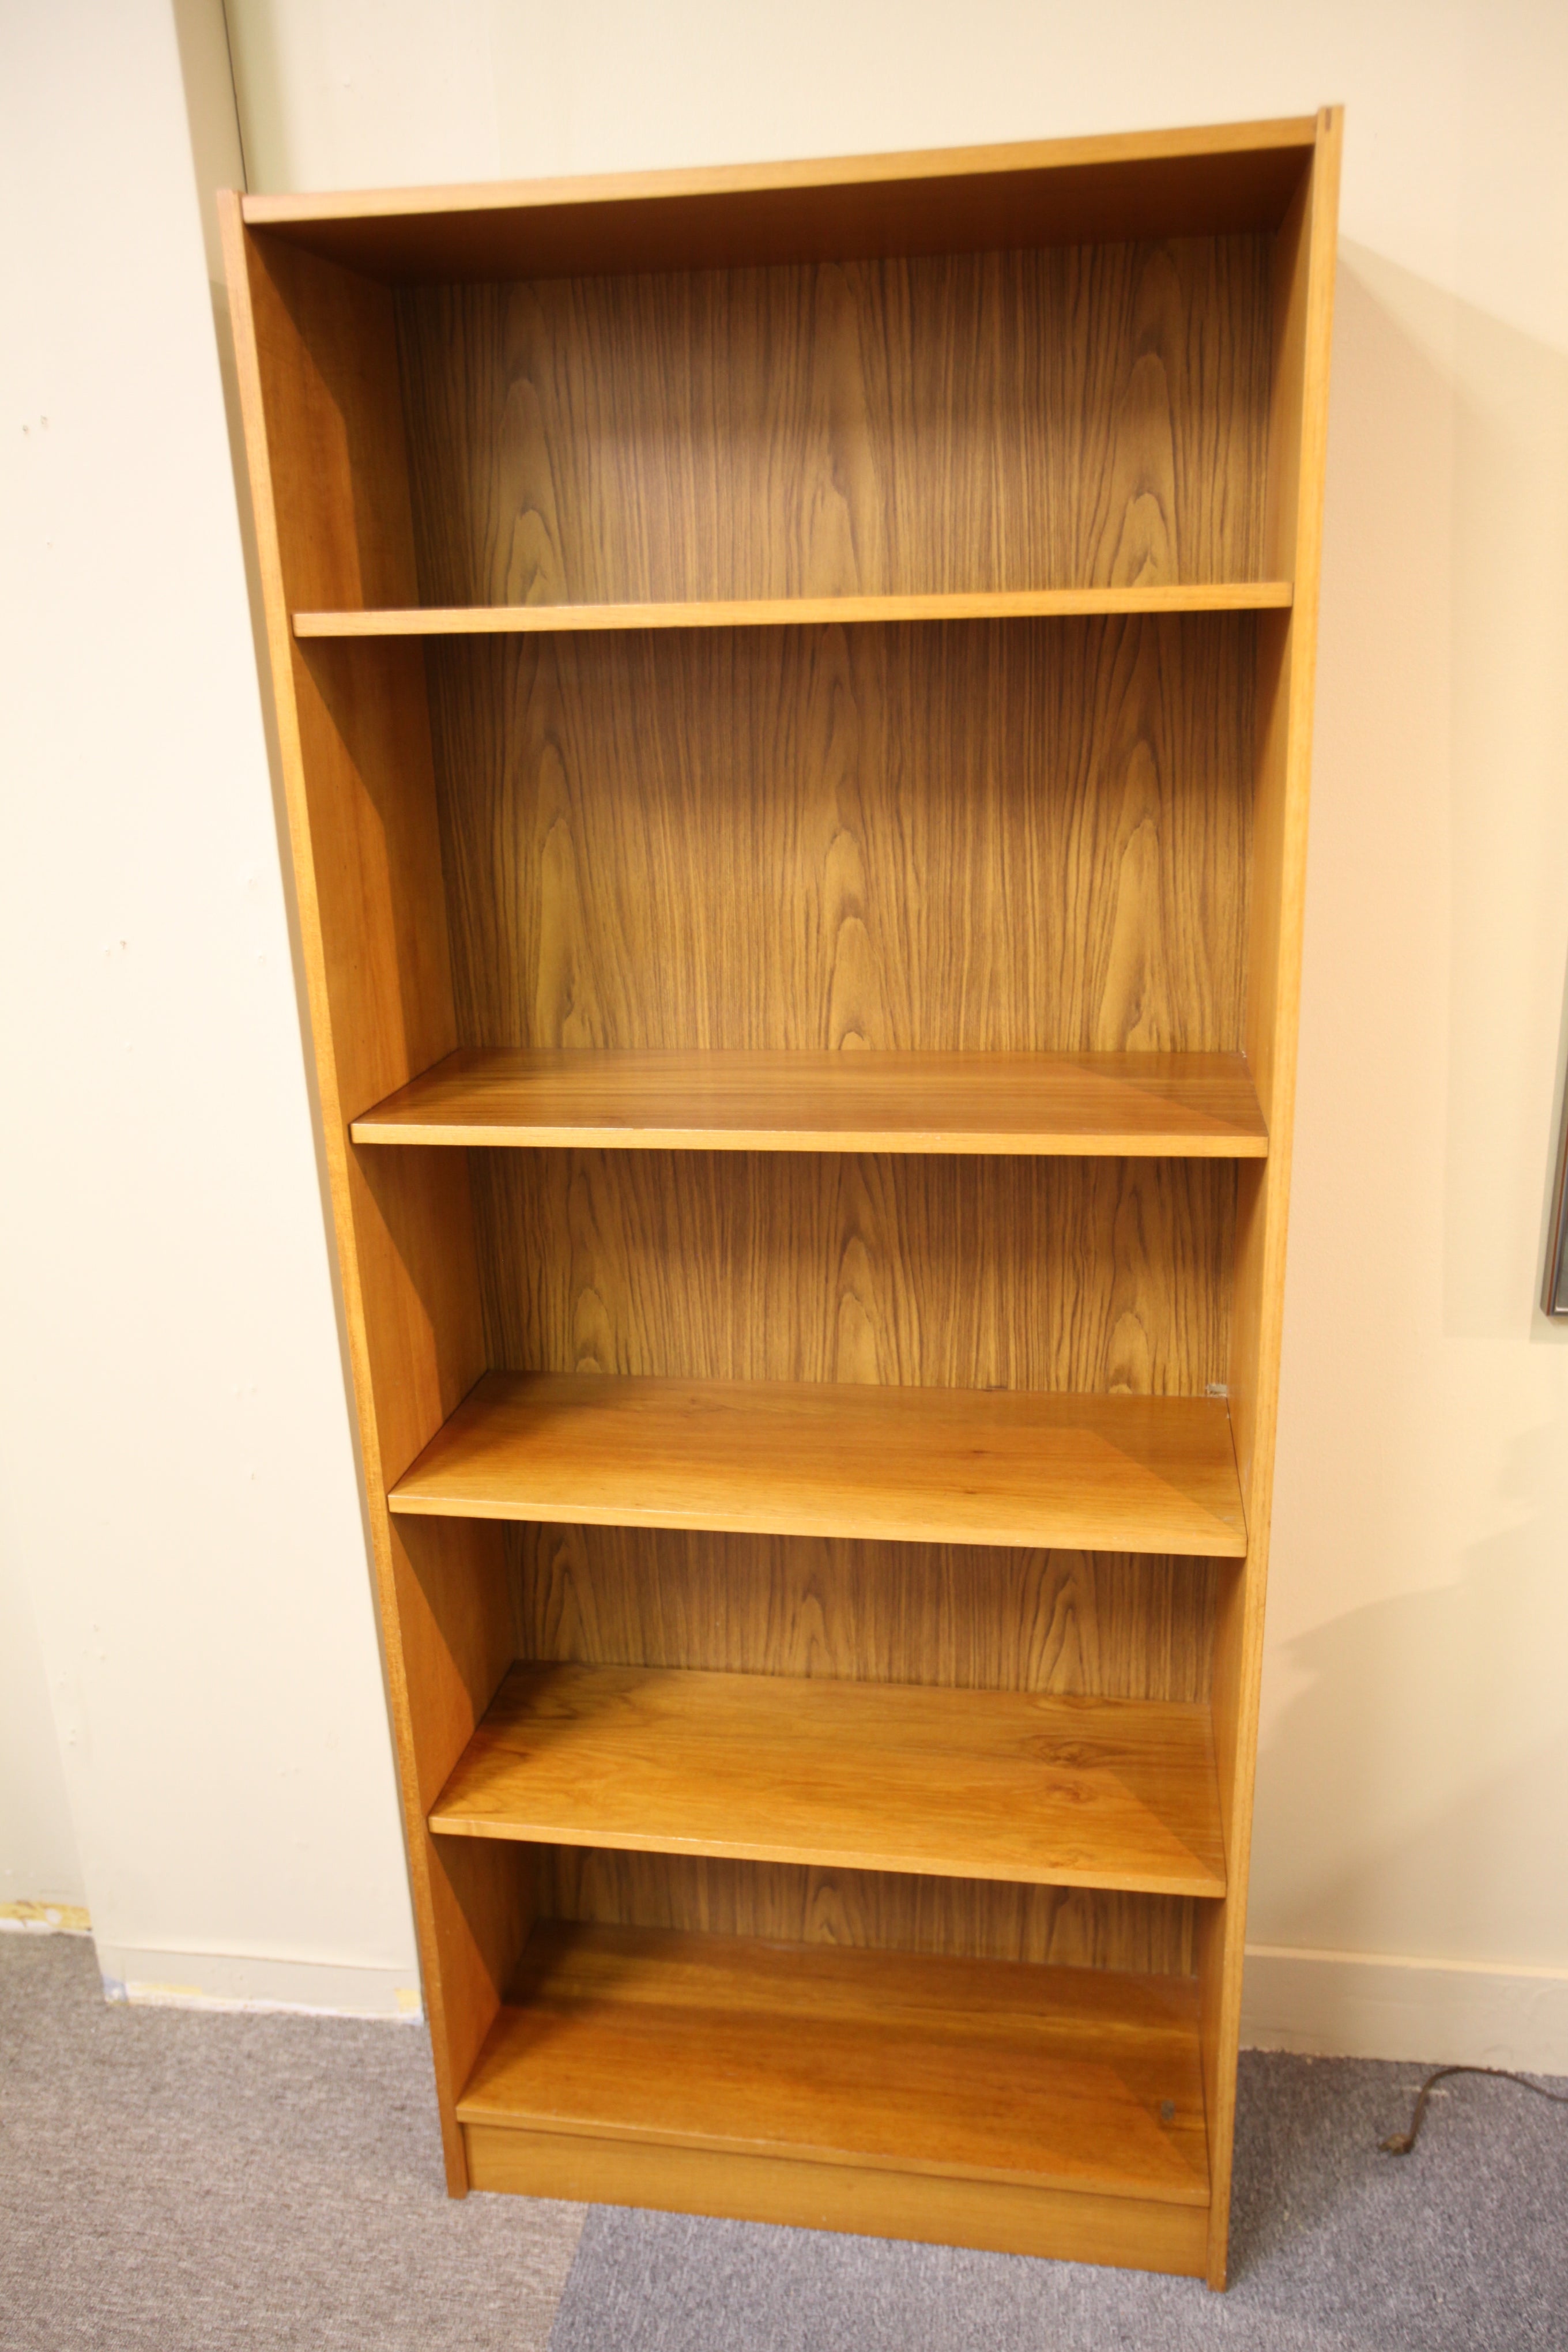 Tall Danish Teak Bookshelf (72"H x 30.5"W x 11.75"D)